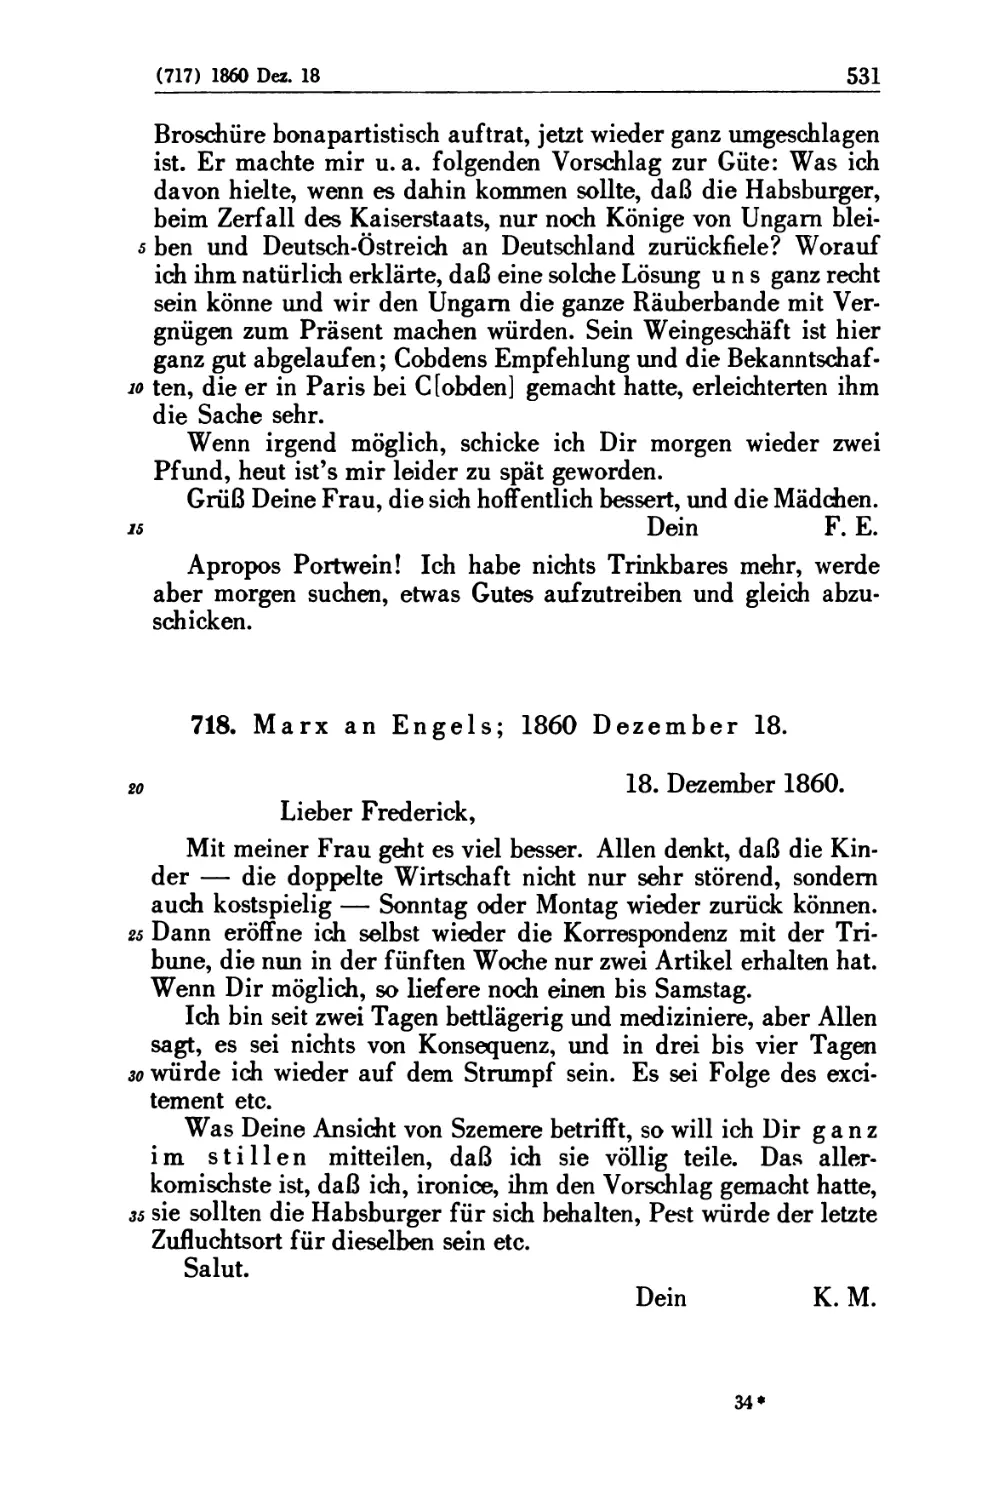 718. Marx an Engels; 1860 Dezember 18